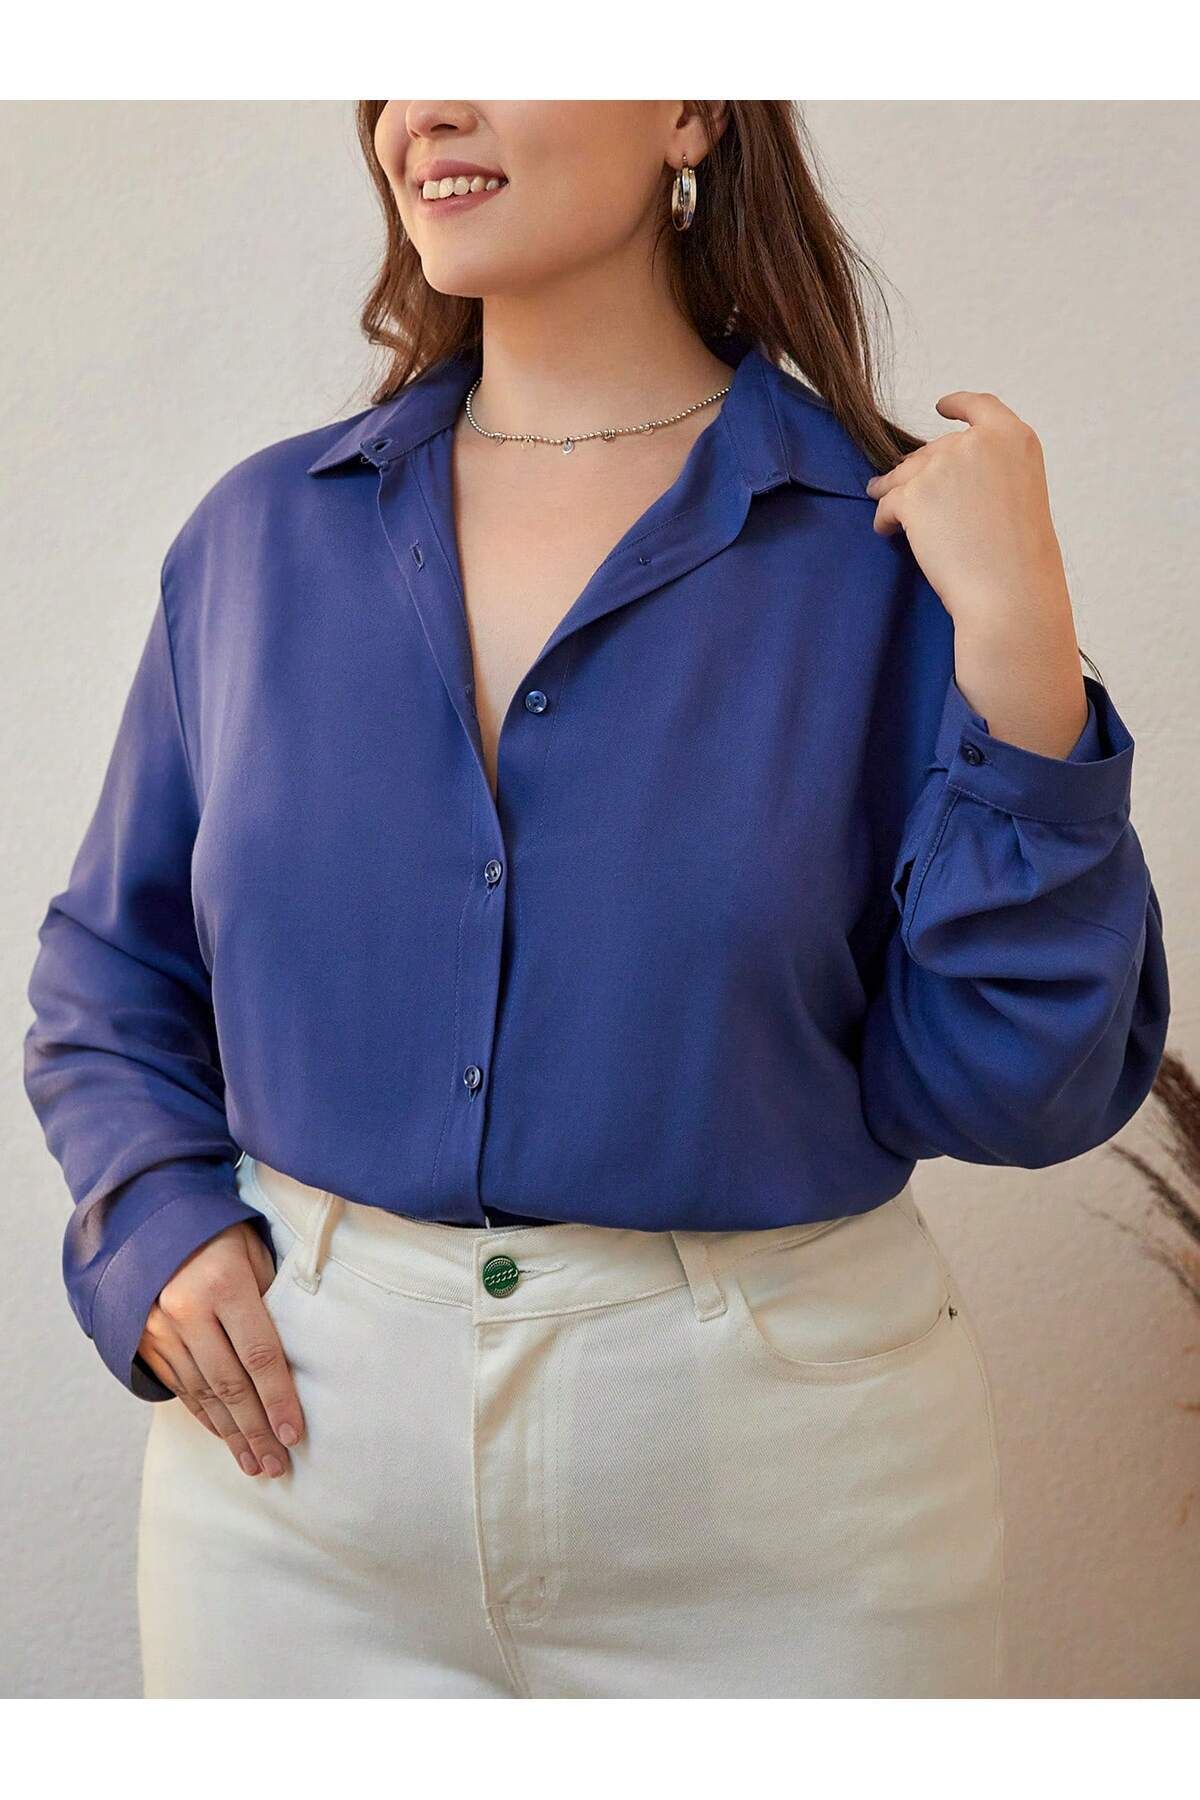 POLO BONETTA Kadın Indigo Mavi Büyük Beden Basic Geniş Kalıp Dokuma Viskon Kumaş Gömlek Bluz